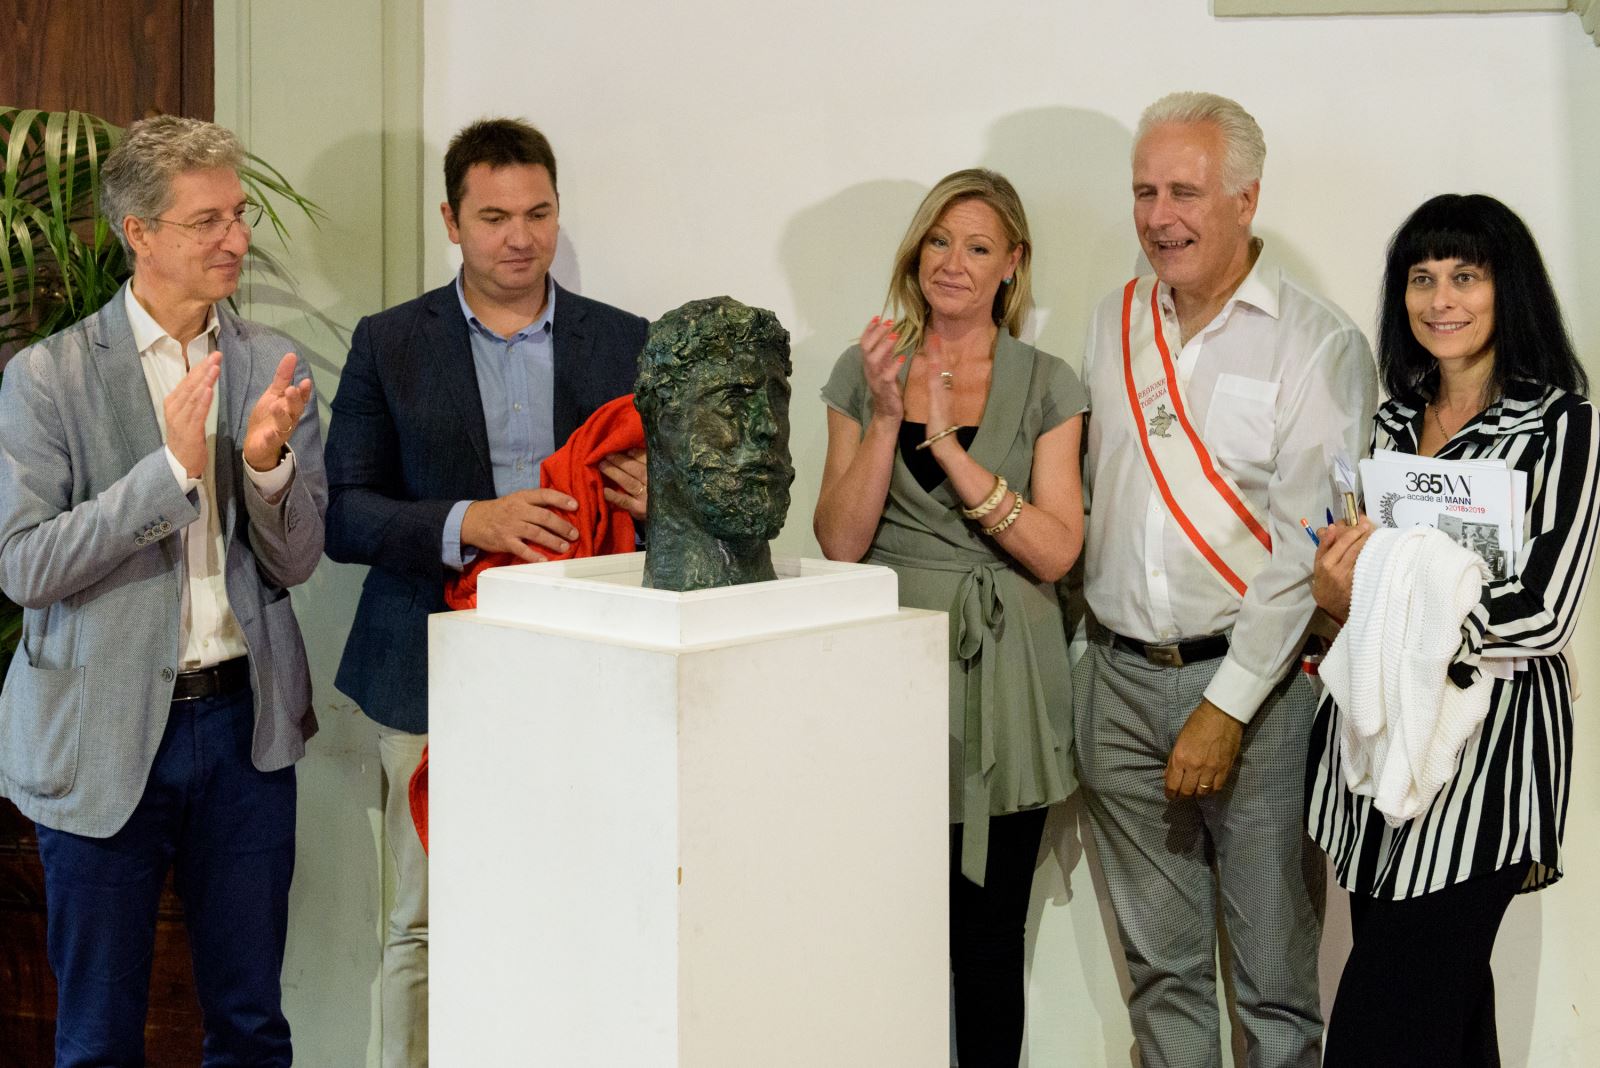 Donazione busto Porsenna: da sinistra, Stefano Casciu, Flavio Foderini, Chiara Lanari, Eugenio GIani e Maria Angela Turchetti